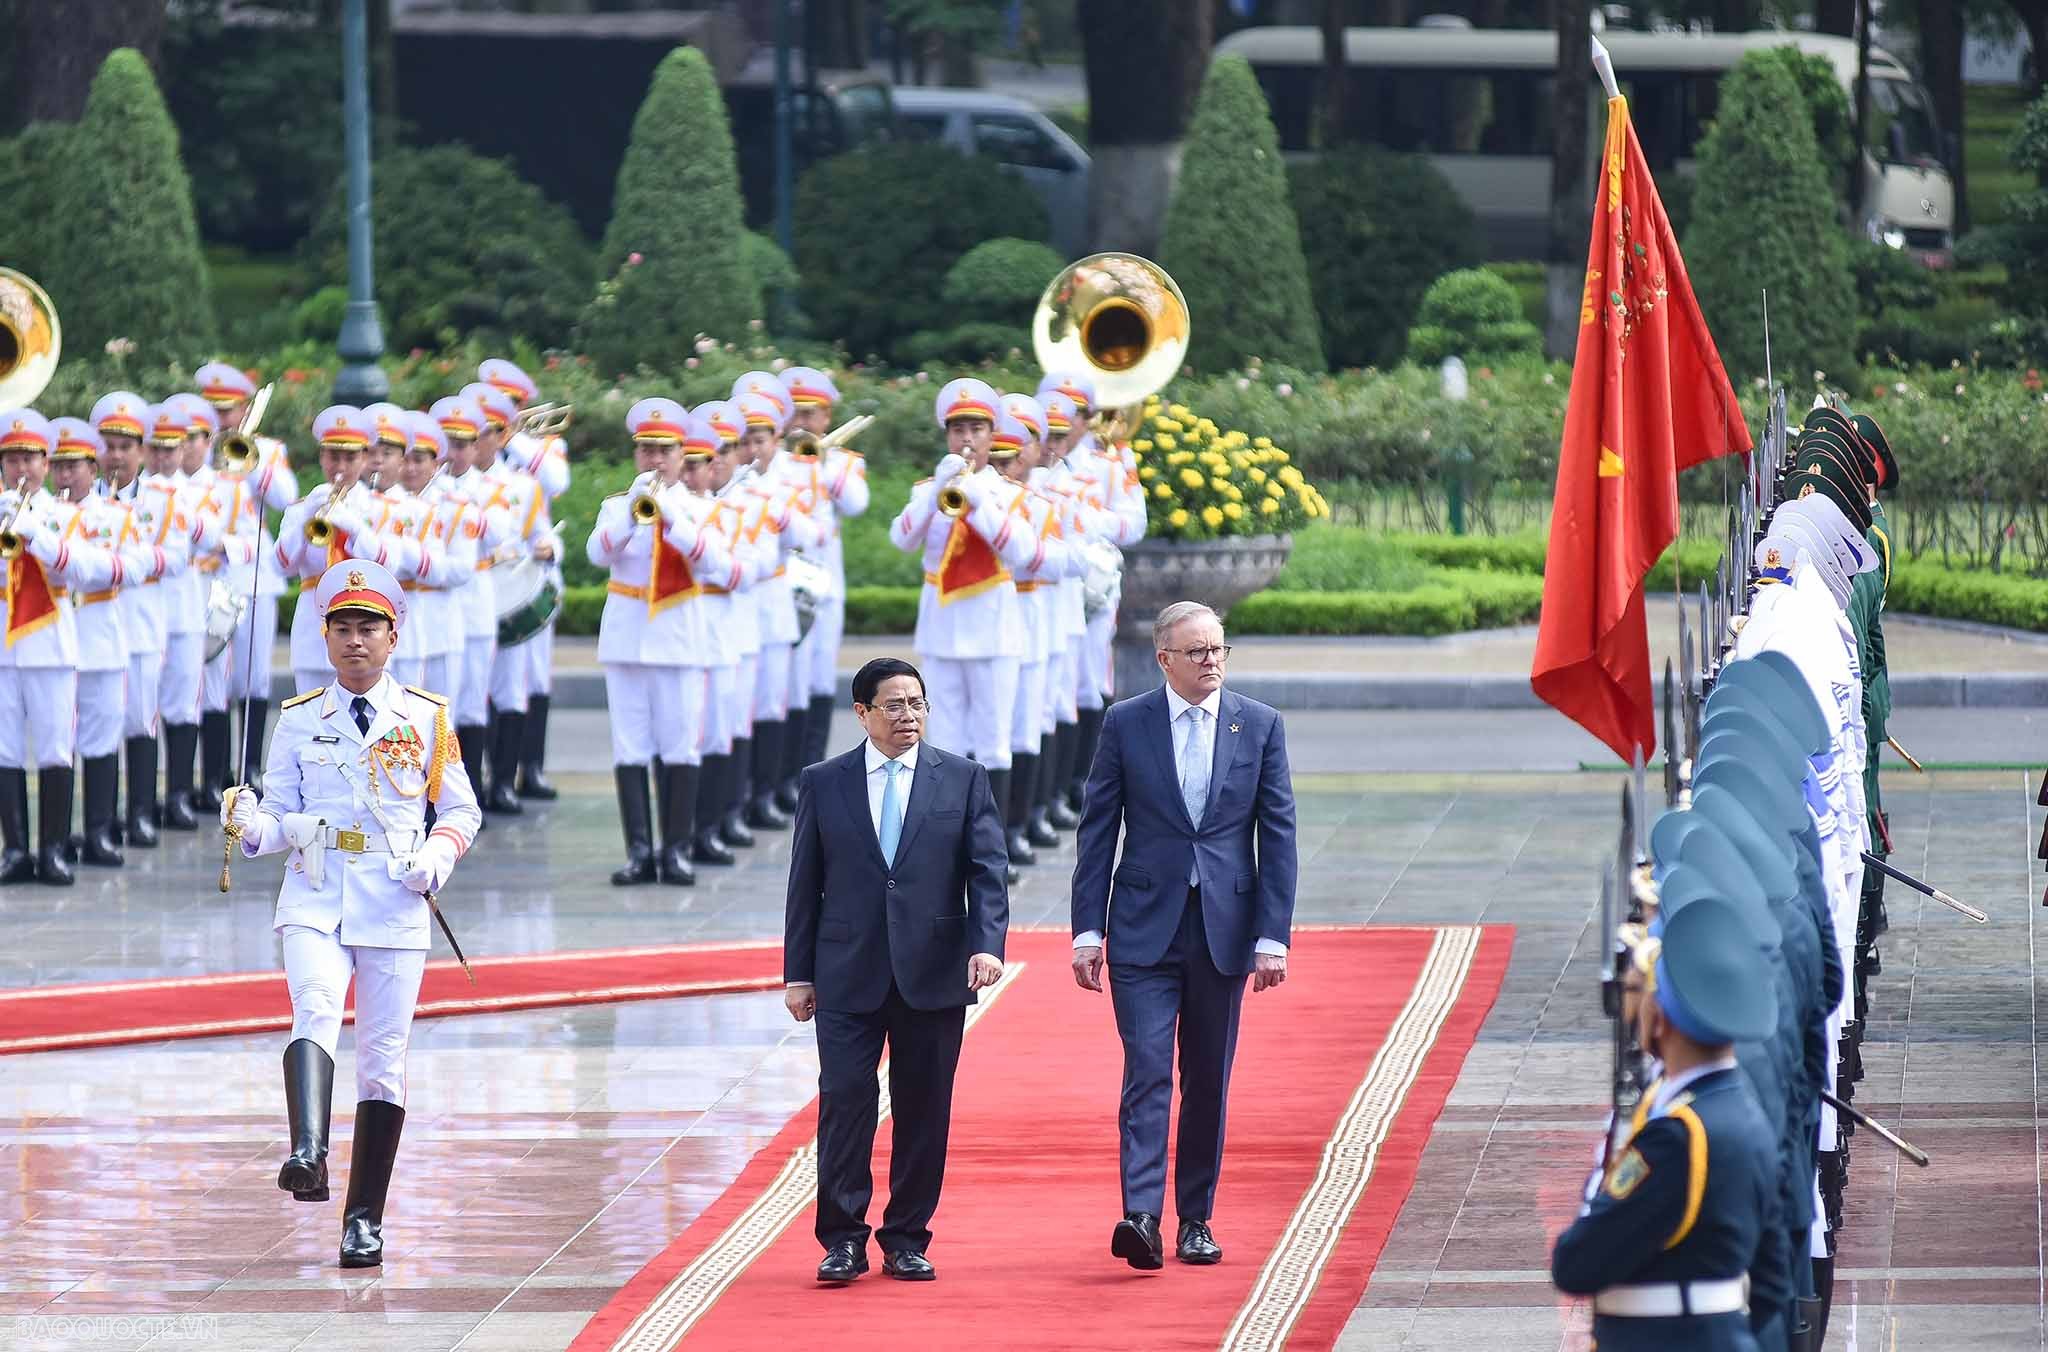 Việc thủ tướng Anthony Albanese thăm chính thức Việt Nam có ý nghĩa rất quan trọng khi hai nước kỷ niệm 50 năm thiết lập quan hệ ngoại giao, đây là cơ hội để nhìn lại thành tựu trong năm thập kỷ qua, đồng thời có những định hướng hợp tác mới cho thời gian